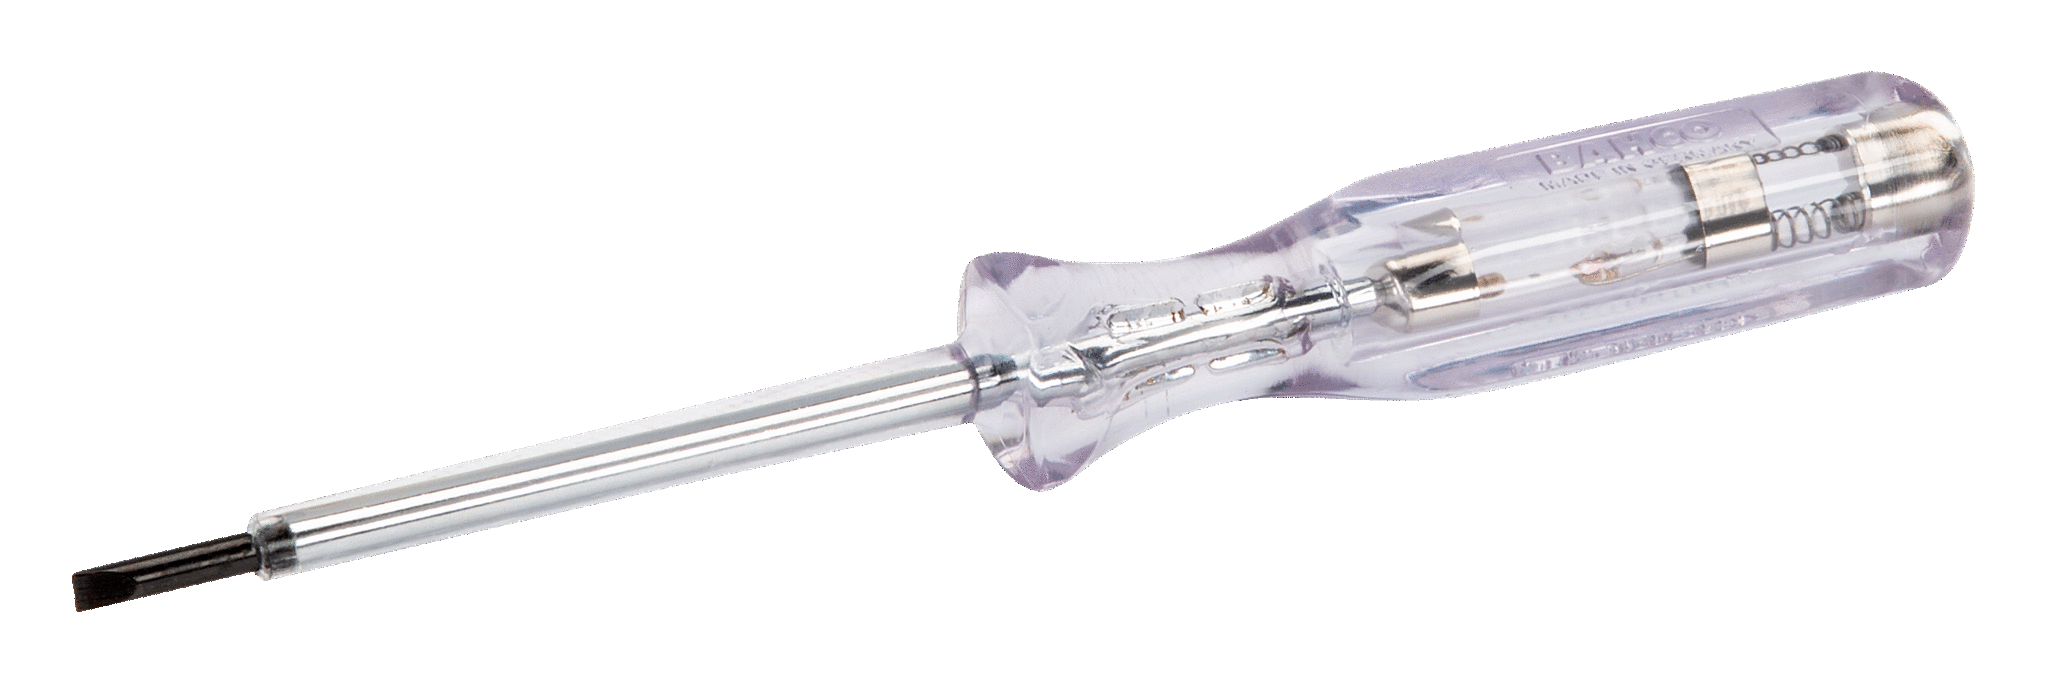 Wkrętak izolowany VDE 0.5x3.5x77 mm BAHCO